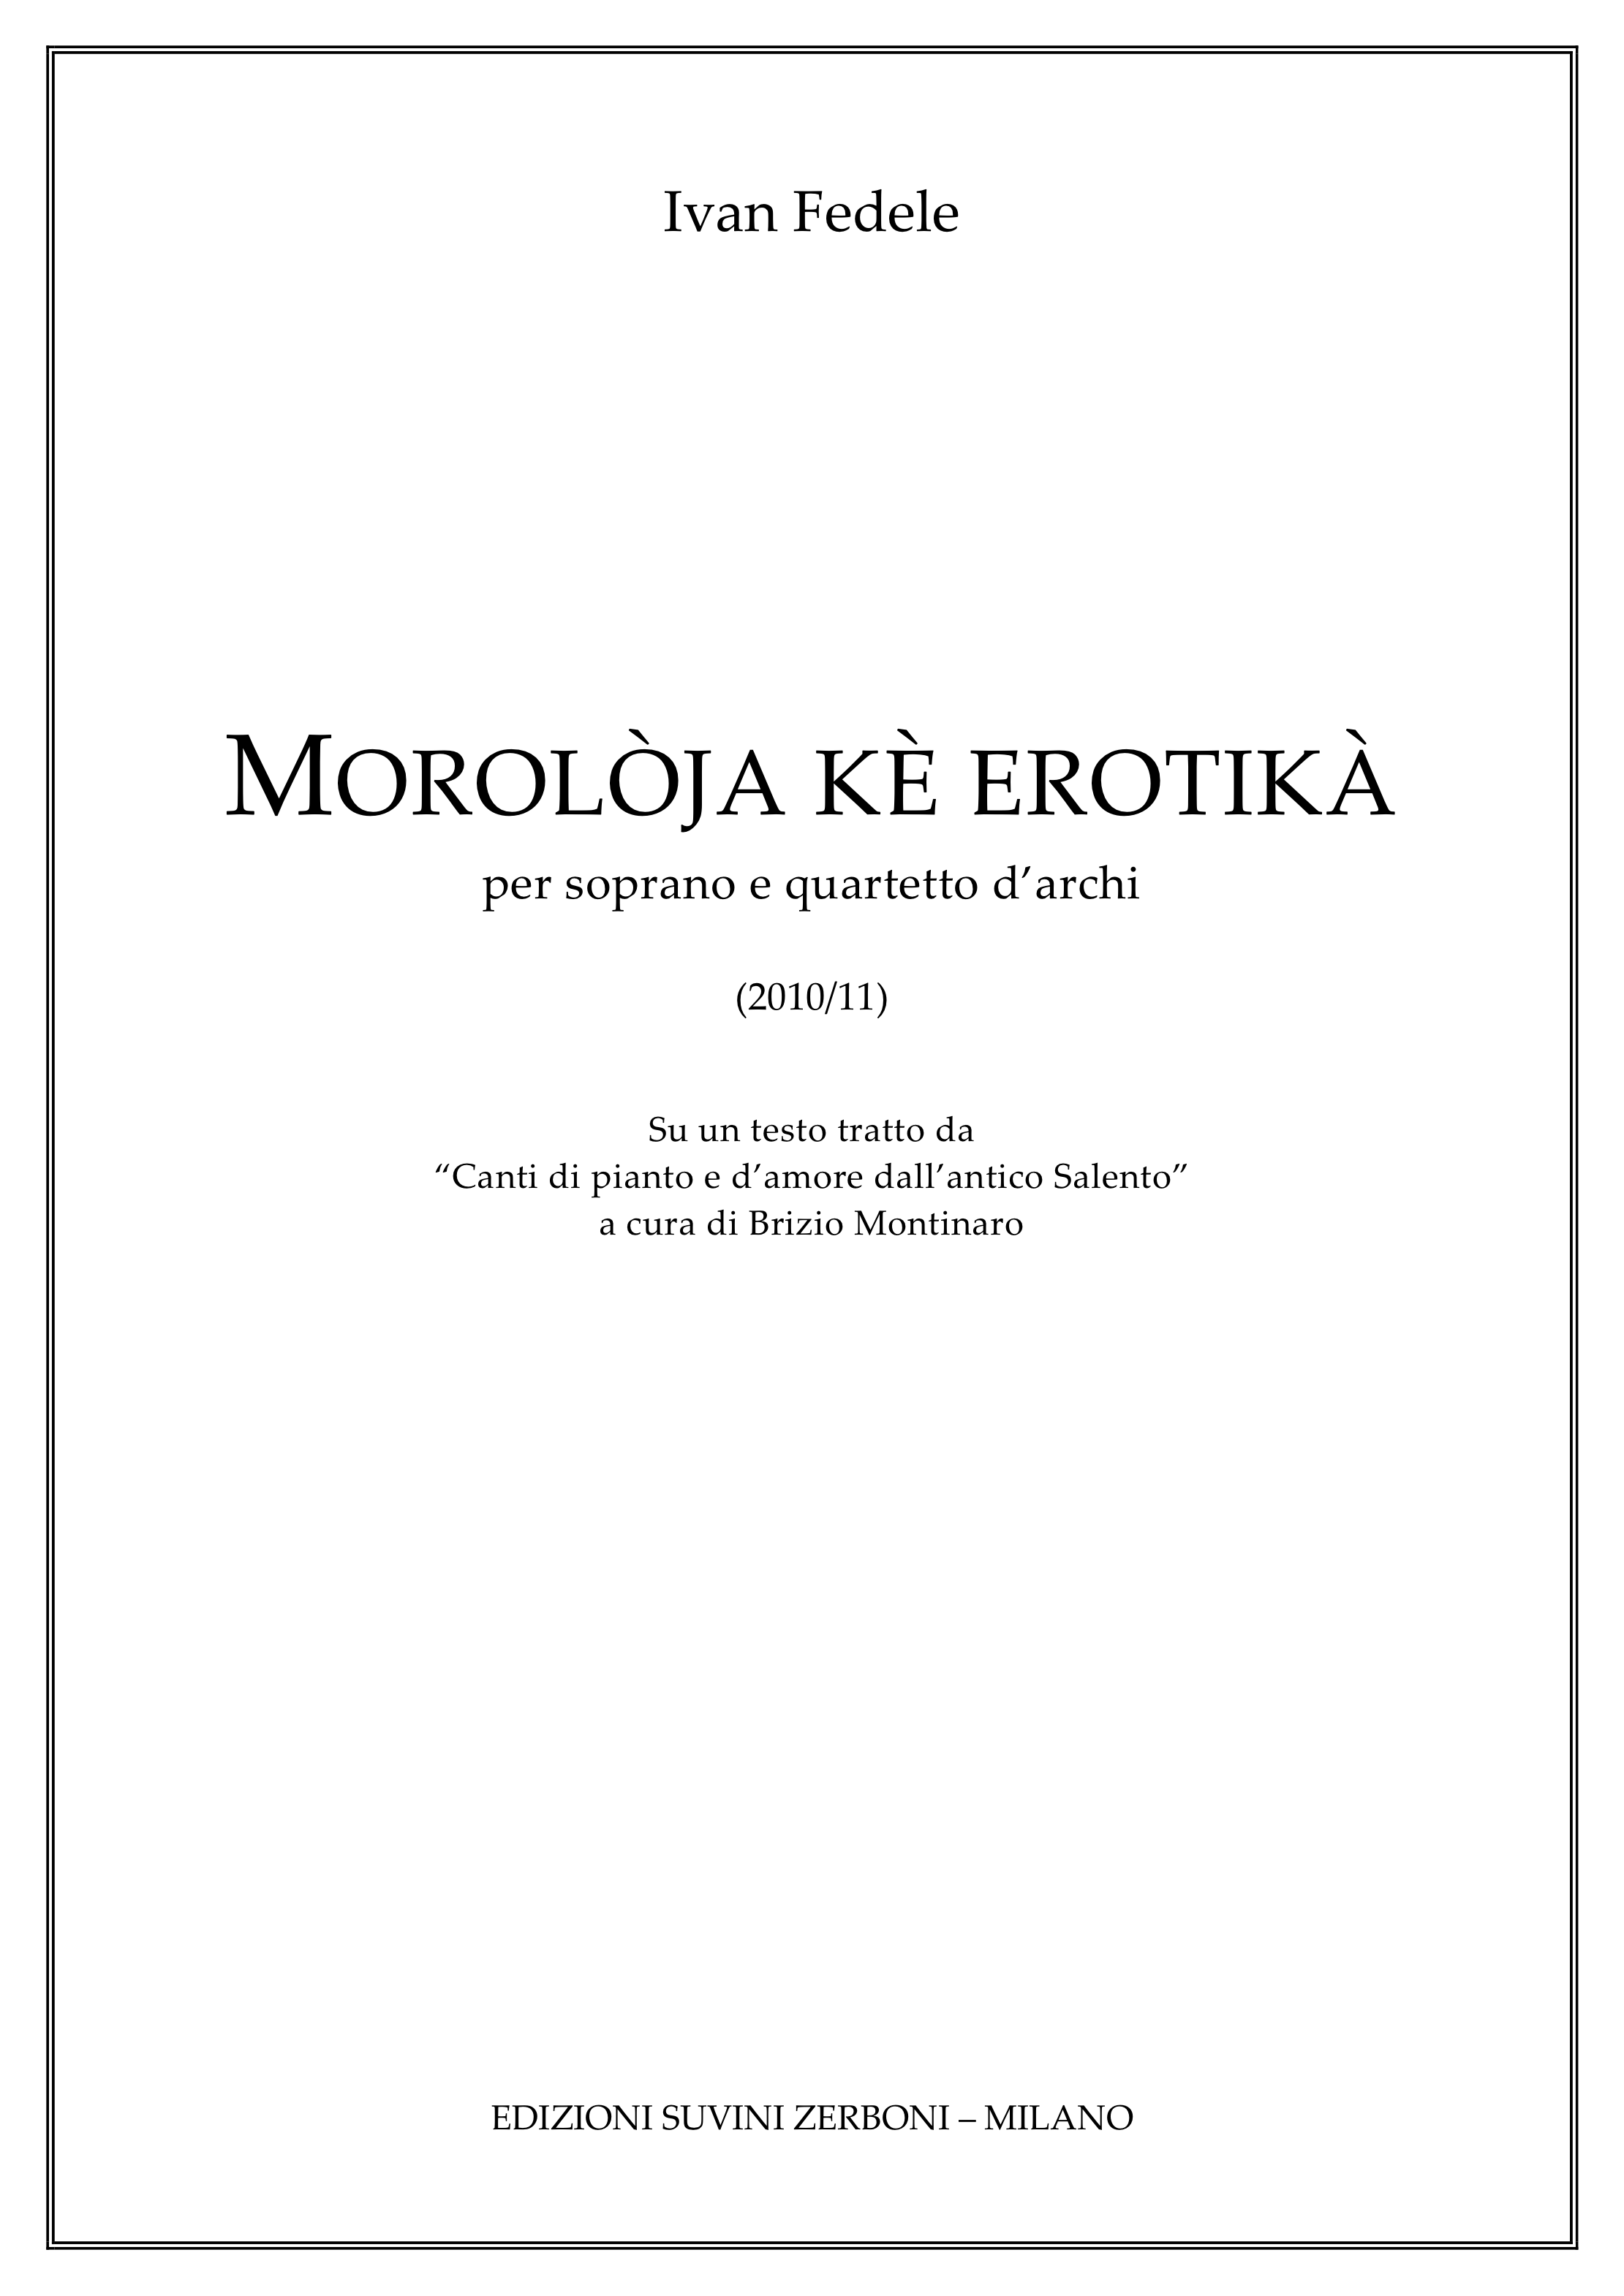 Moroloja Ke Erotika quartetto darchi e voce _Fedele 1